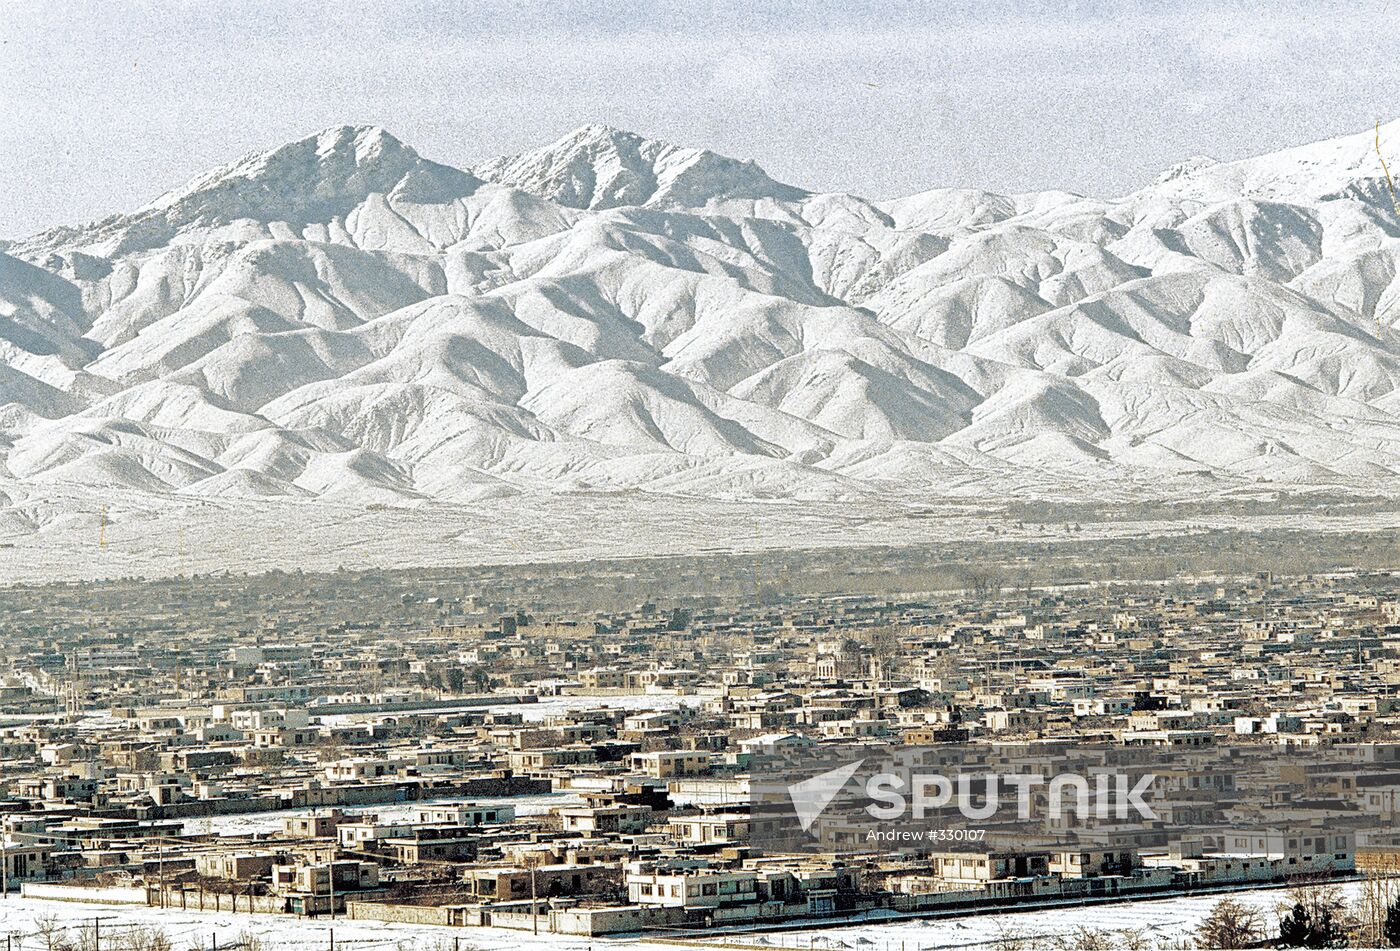 Afghanistan: Panorama of Kabul